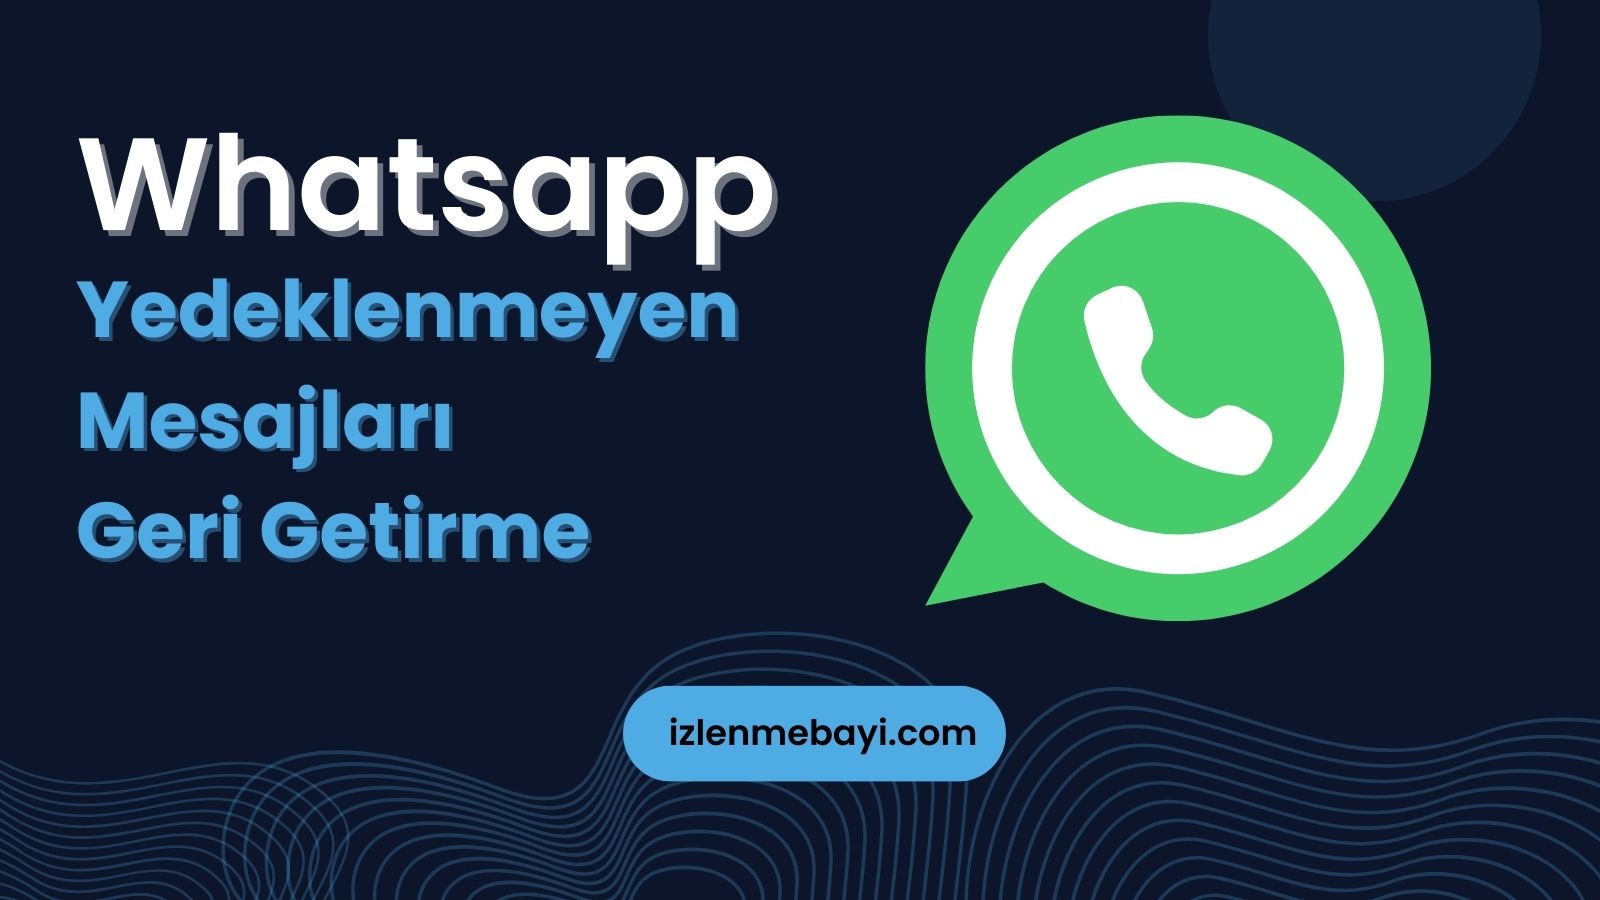 Whatsapp Yedeklenmeyen Mesajları Geri Getirme | iOS ve Android